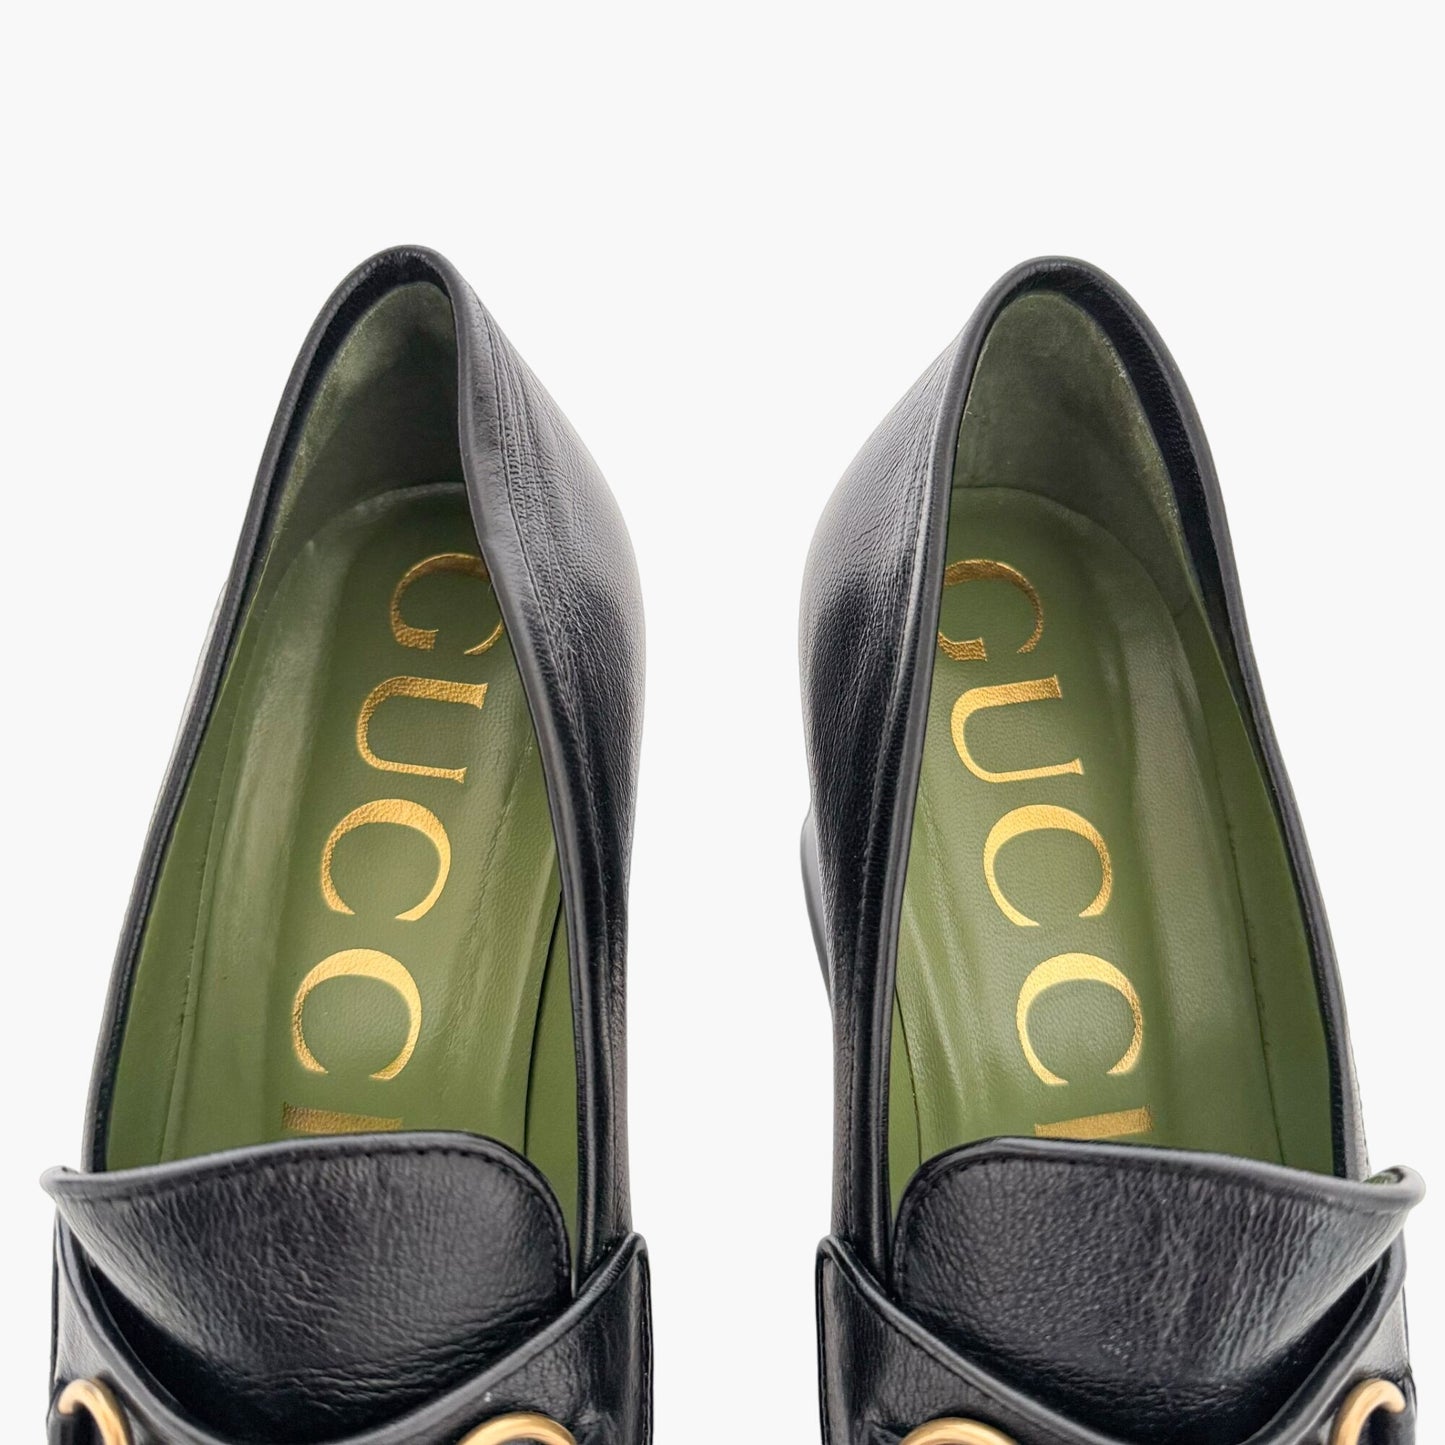 Gucci Houdan 85 Platform Loafer in Black Size 39